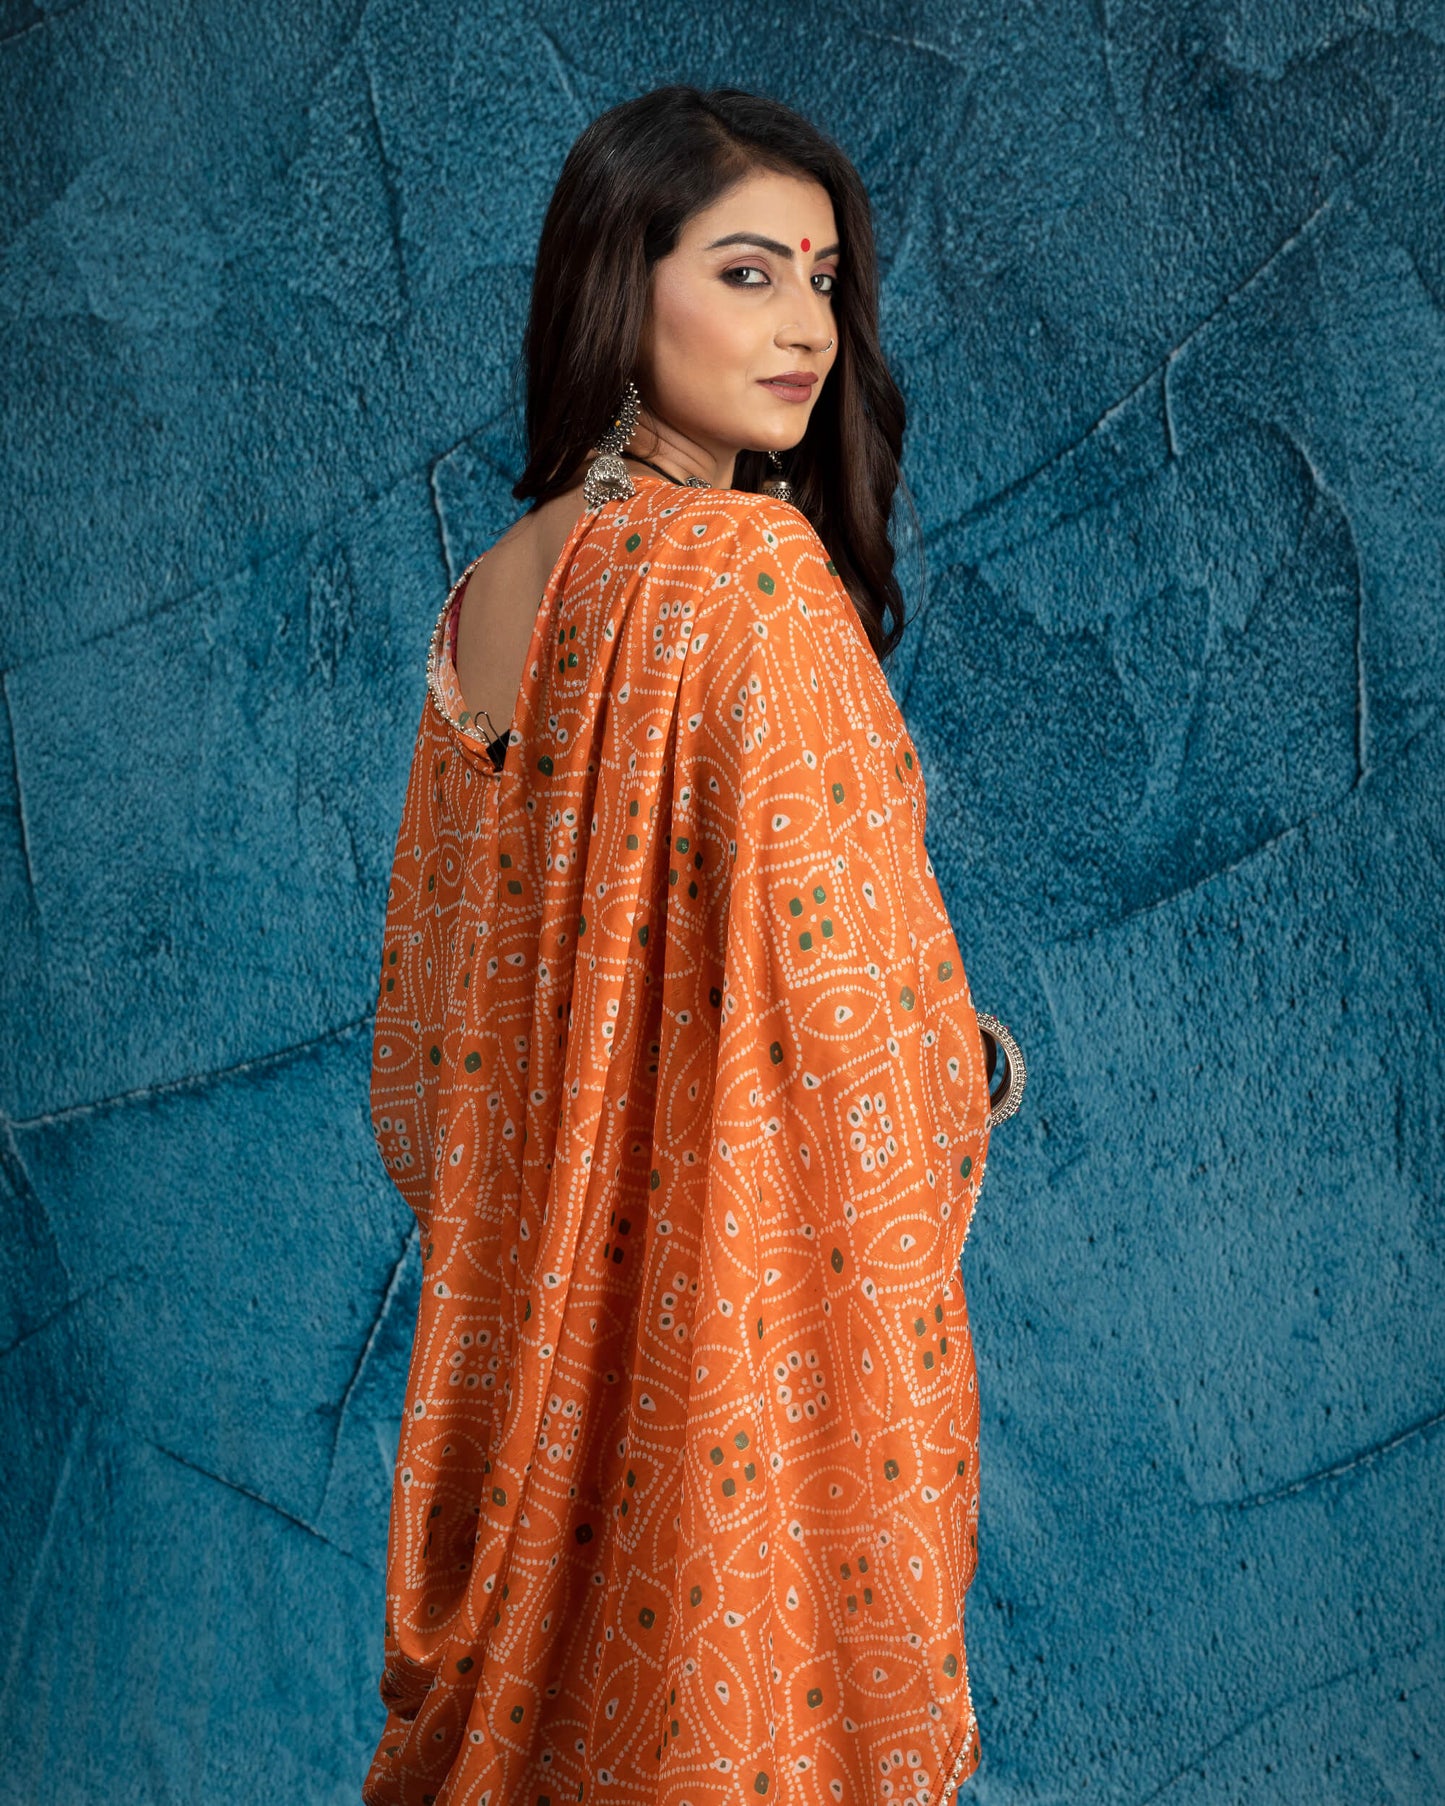 Squash Orange And White Bandhani Pattern Digital Print Water Lurex Chiffon Saree With Pearl Work Lace Border